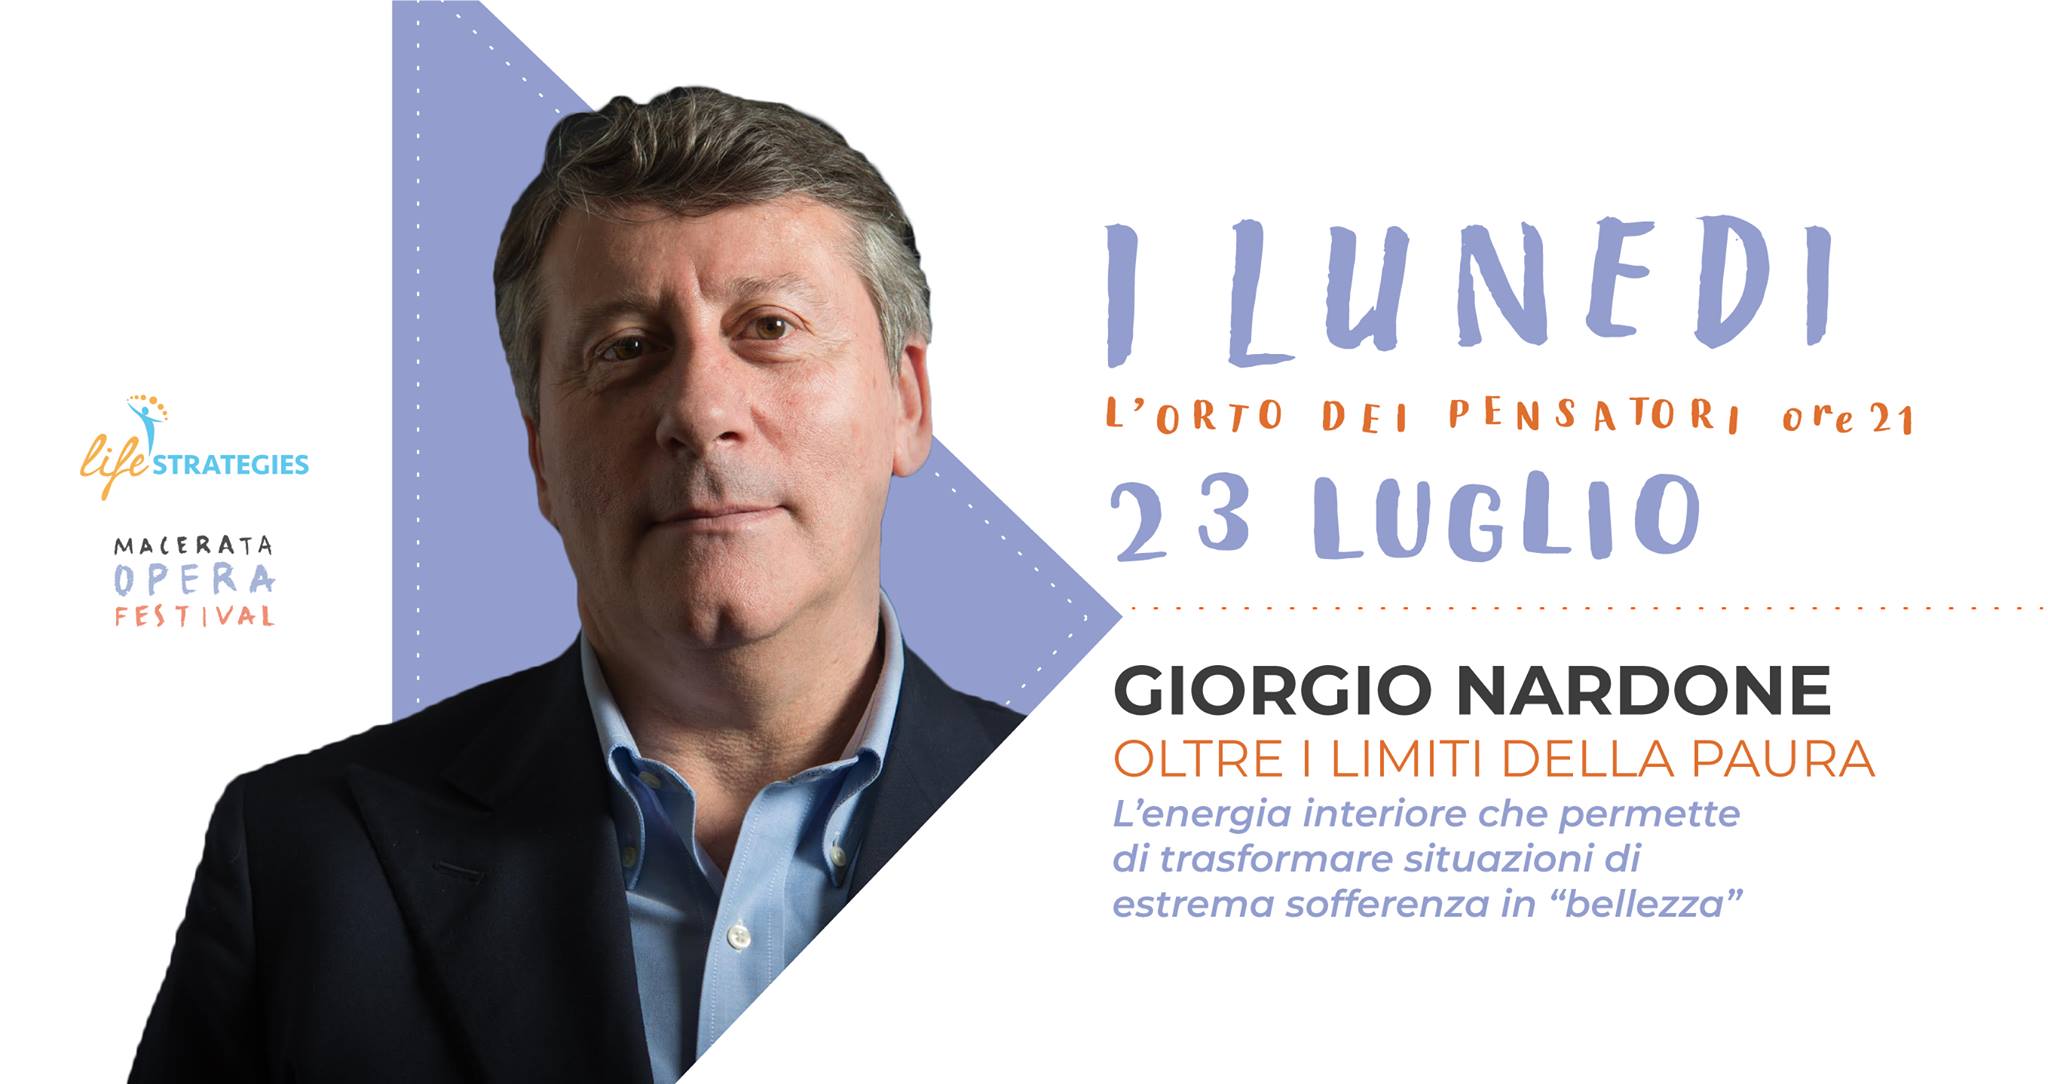 Macerata Opera Festival, incontro con Giorgio Nardone